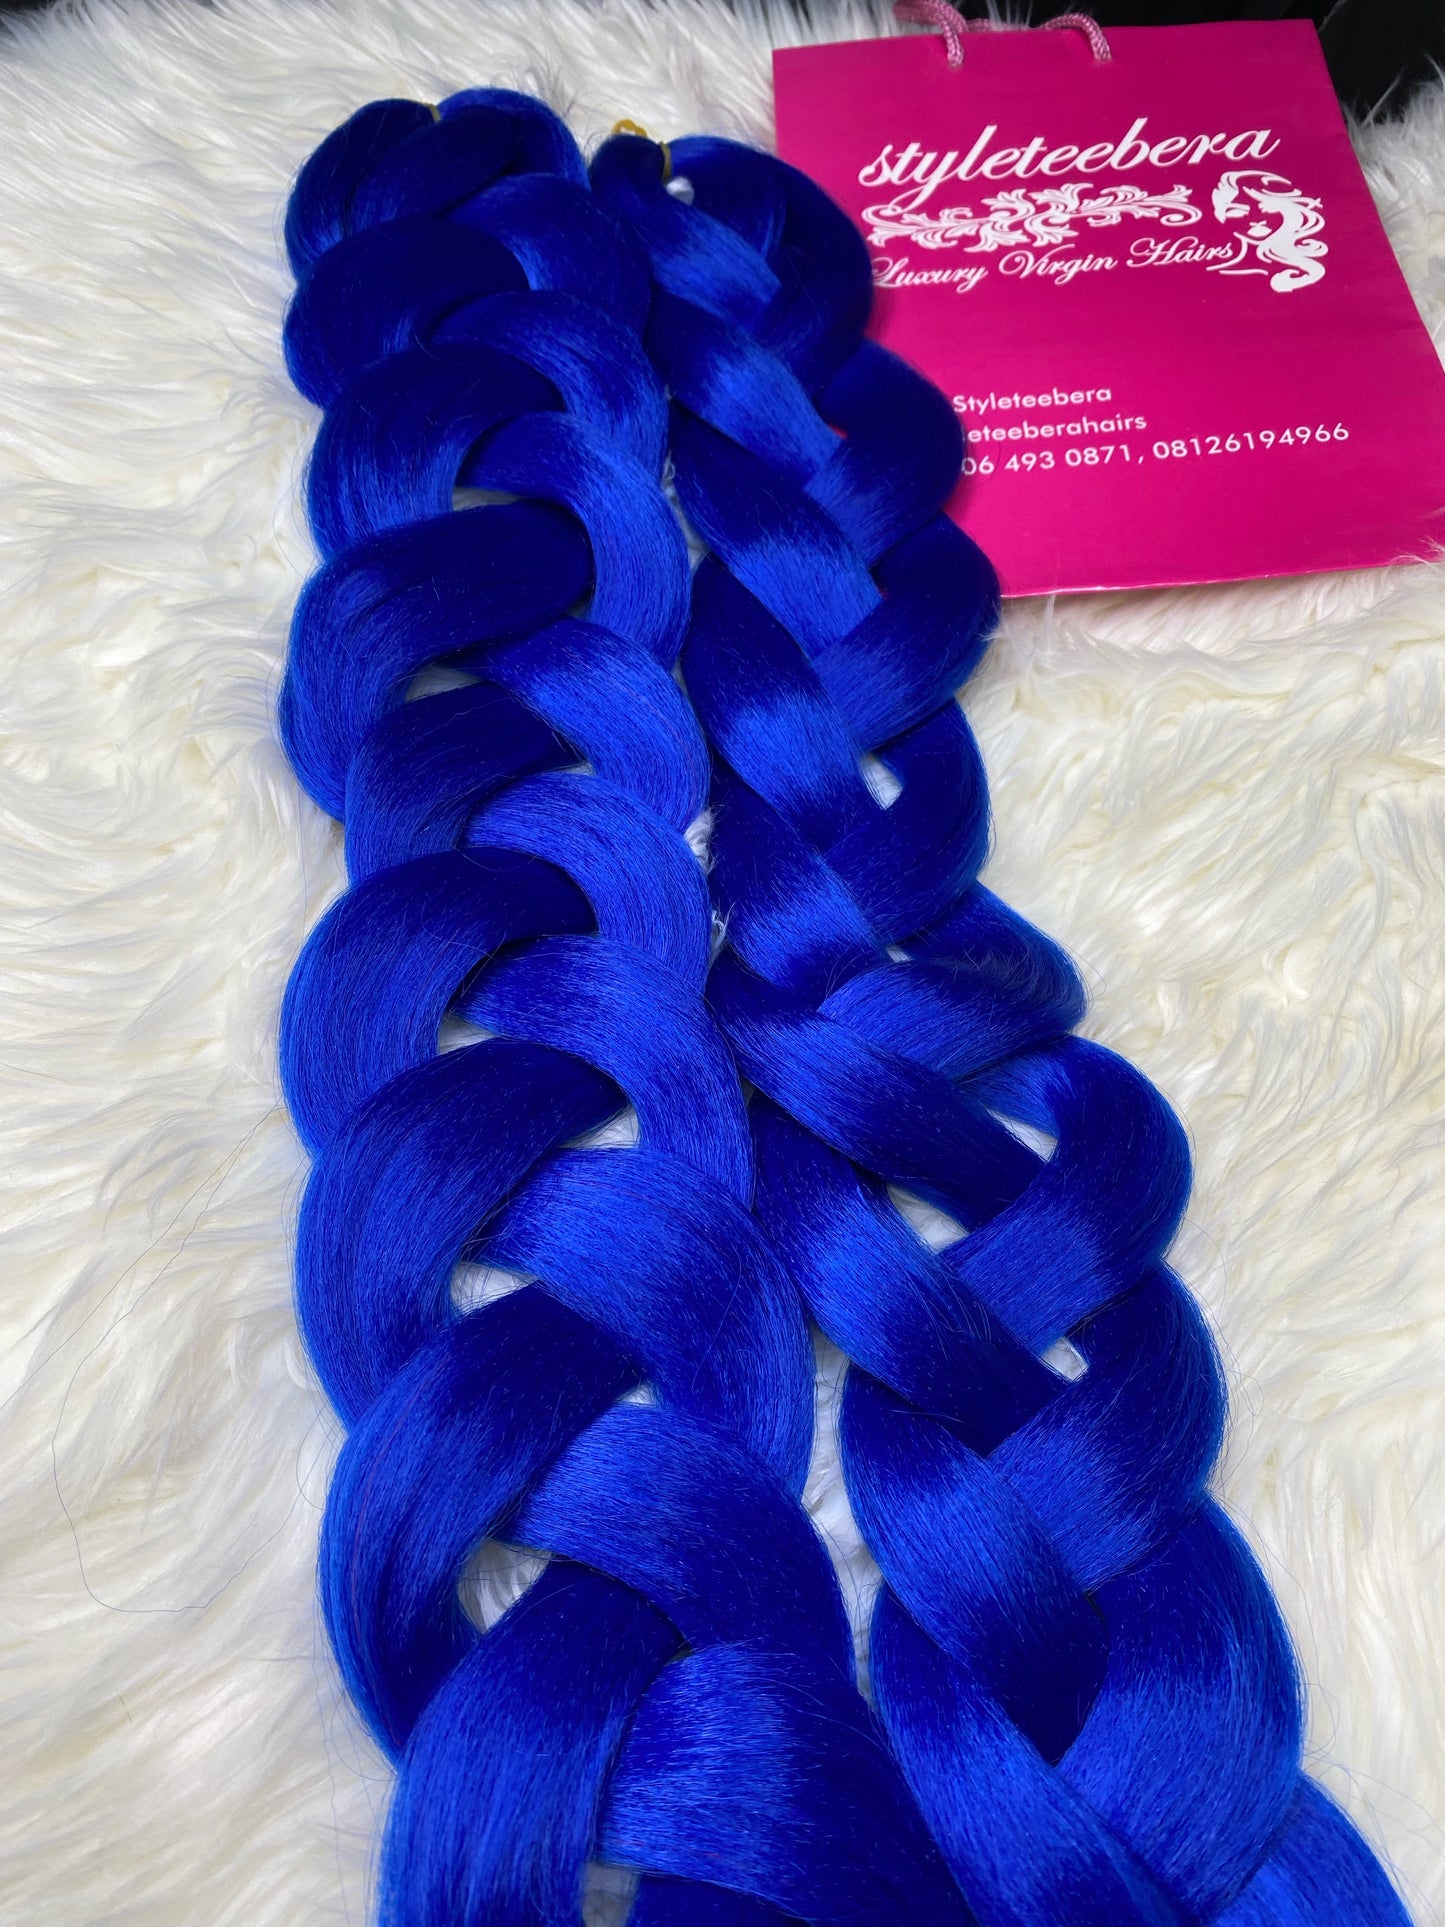 Kanekalon hair #blue